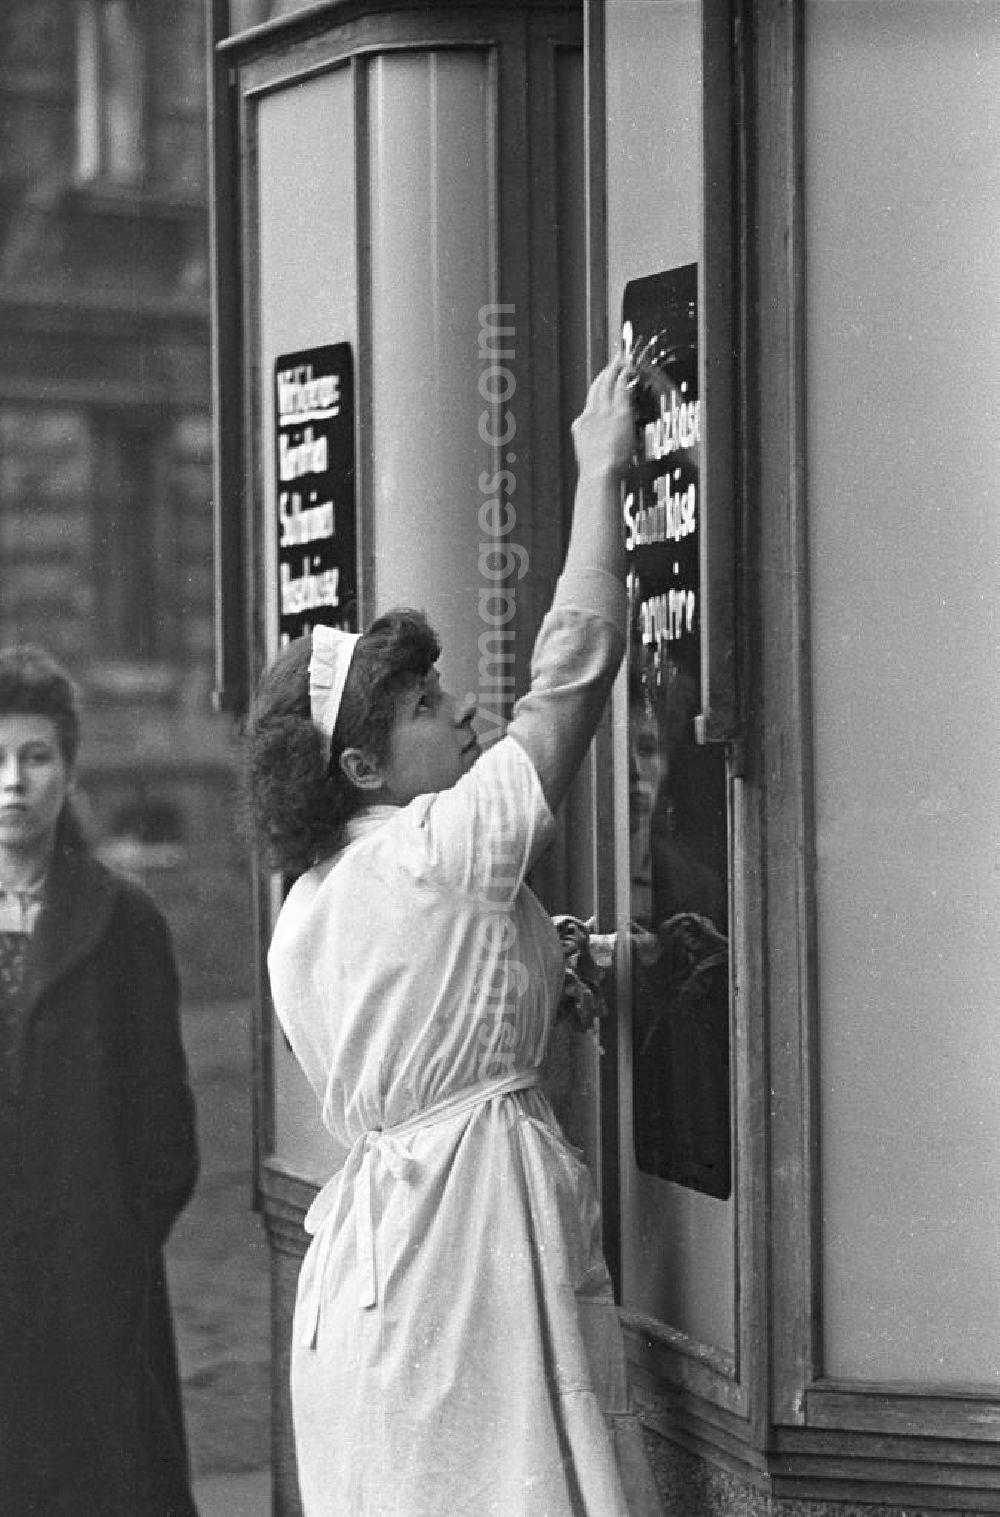 Leipzig: Eine Verkäuferin wischt eine Tafel am Eingang von einem Geschäft. Sie trägt einen weißen Kittel und eine Haube. Bestmögliche Qualität nach Vorlage!